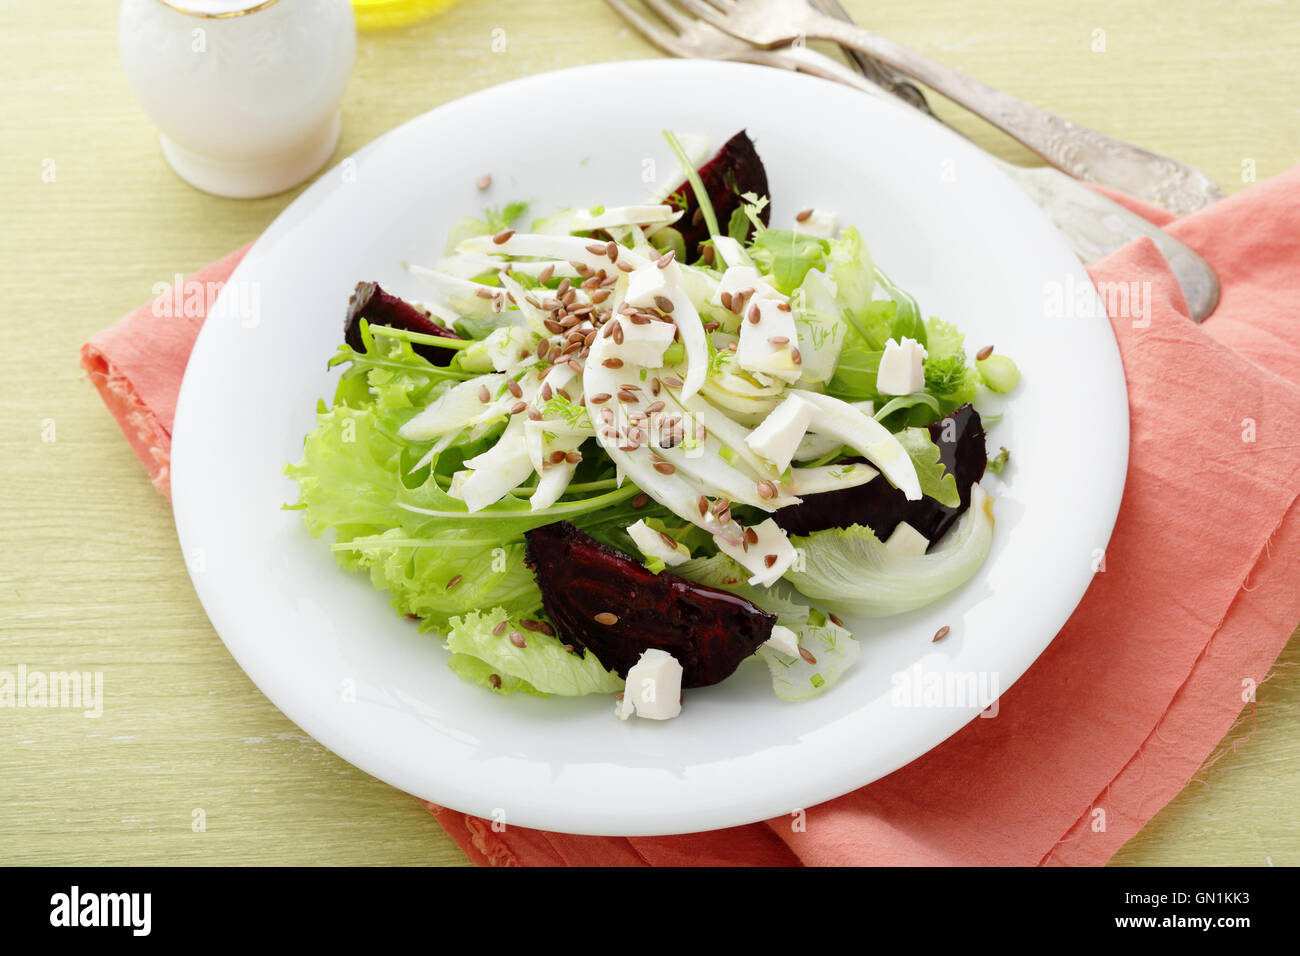 Bietole e insalata di finocchio sulla piastra, cibo closeup Foto Stock